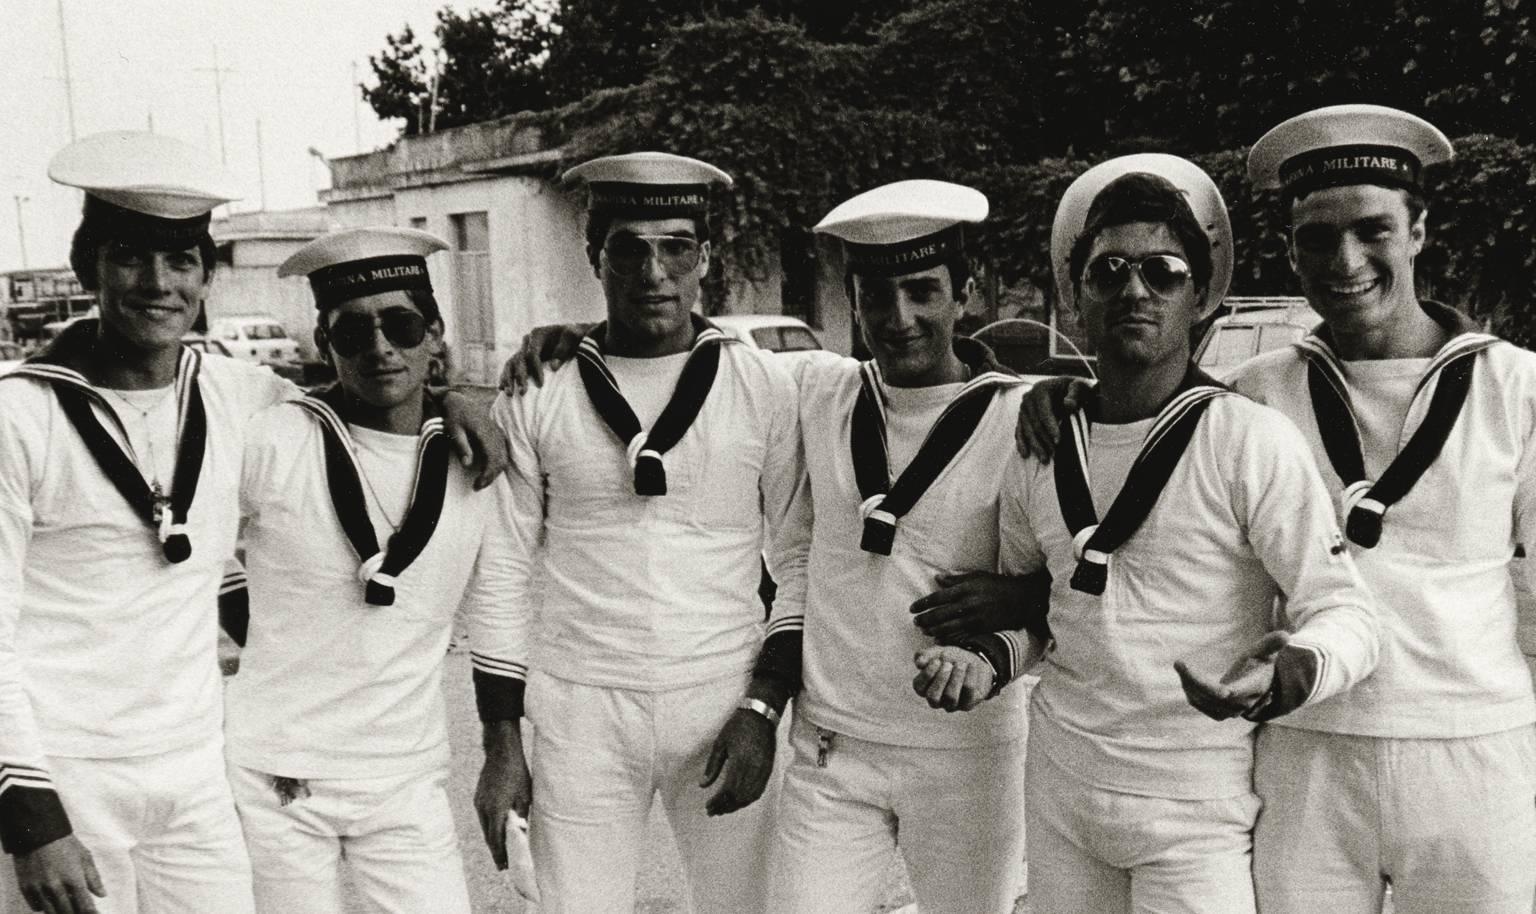 Sailors, La Spezia - Photograph by Ron Baxter Smith